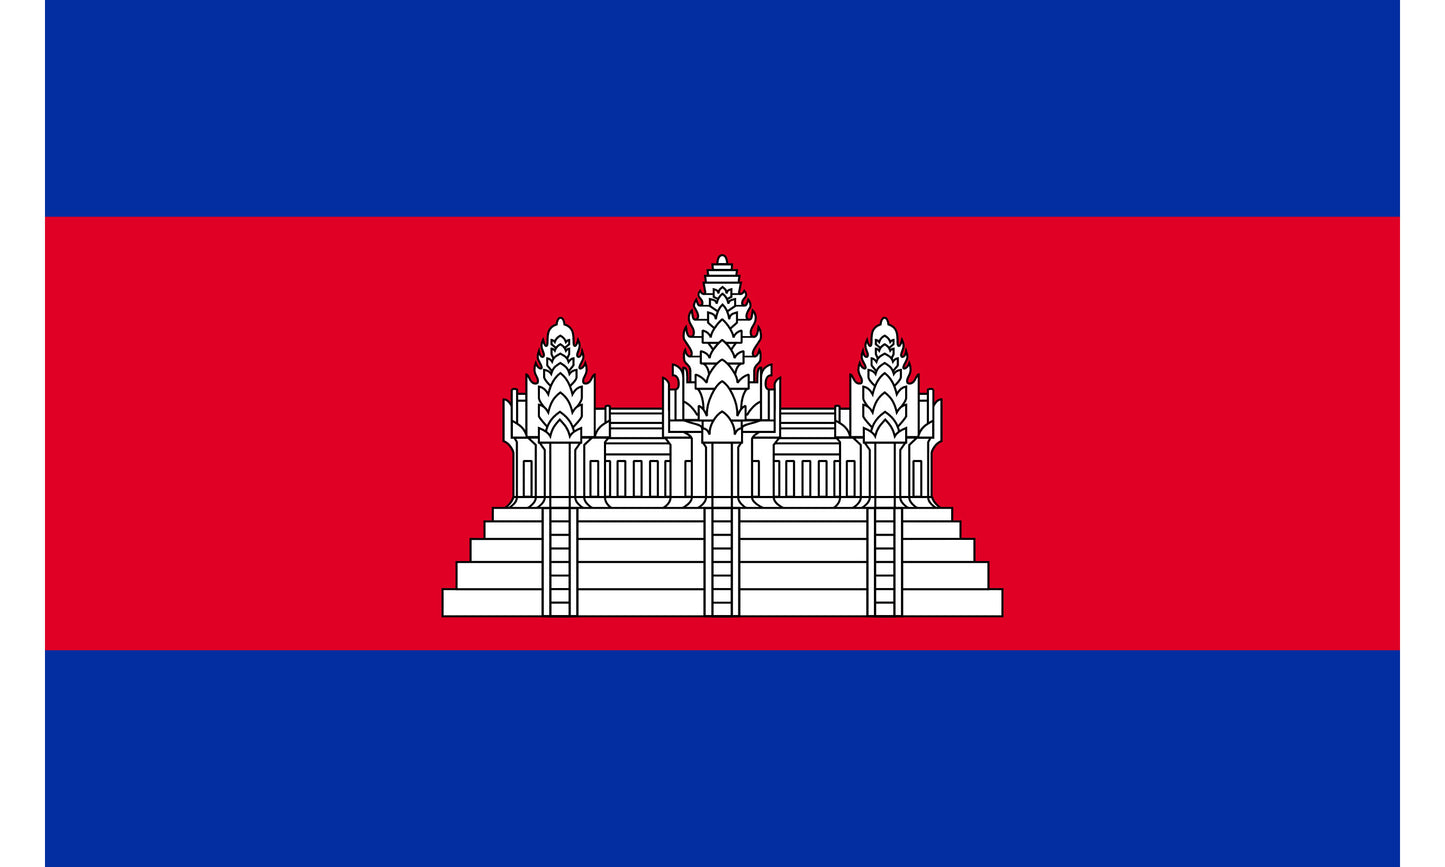 INR-CAM-15x22-2 - государственный флаг Камбоджи, размер: 15х22 см, материал: атлас. Печать с двух сторон. Подставка и шток приобретаются отдельно